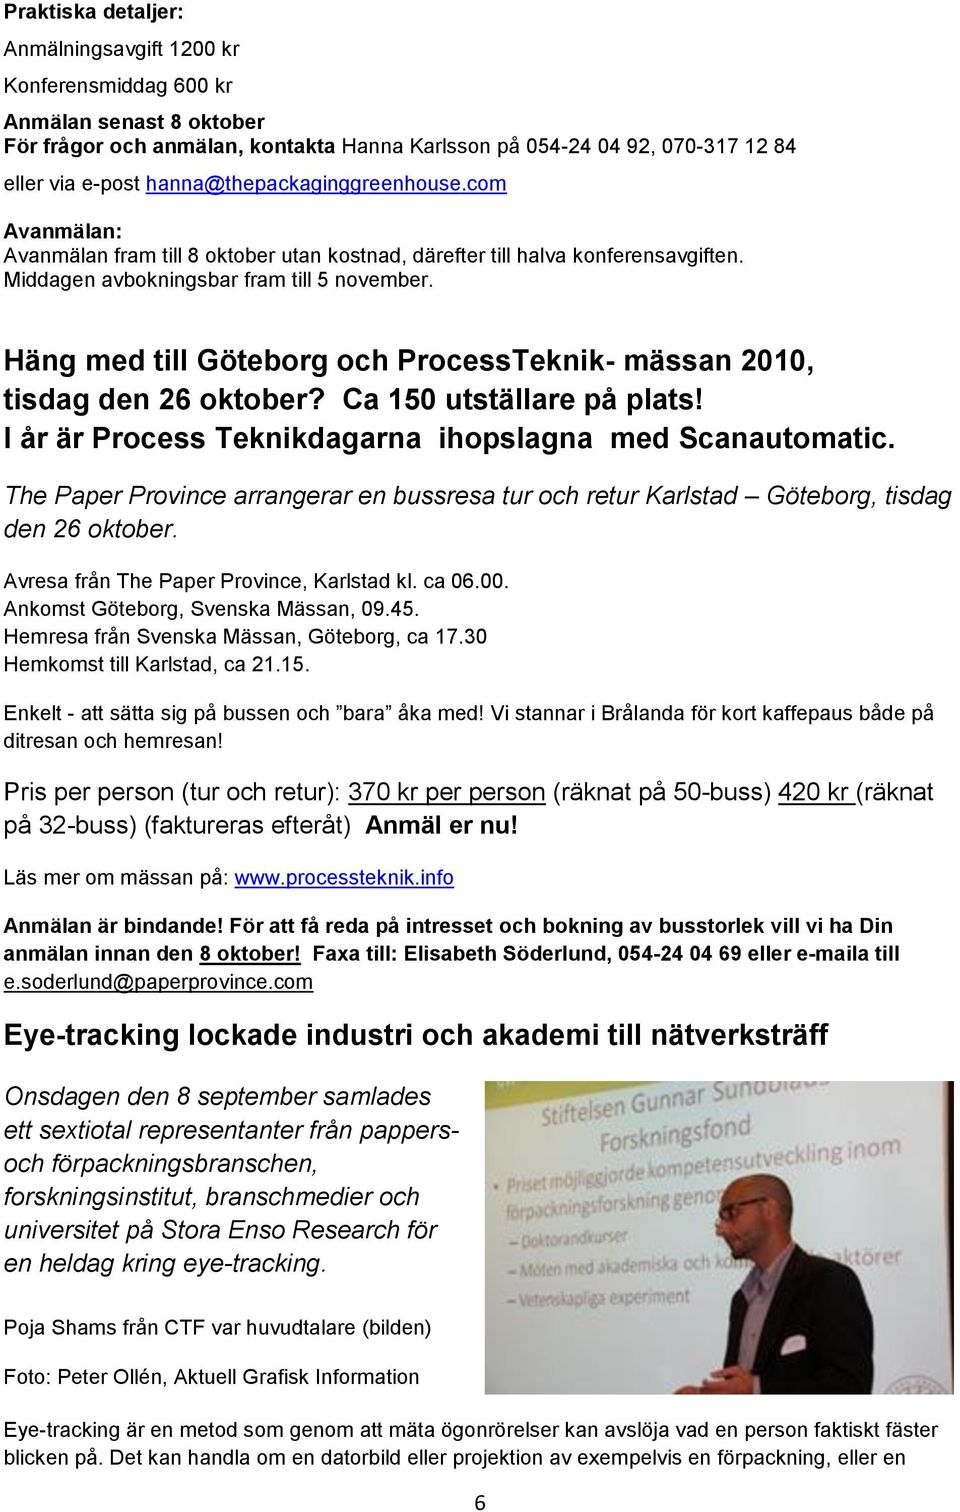 Häng med till Göteborg och ProcessTeknik- mässan 2010, tisdag den 26 oktober? Ca 150 utställare på plats! I år är Process Teknikdagarna ihopslagna med Scanautomatic.